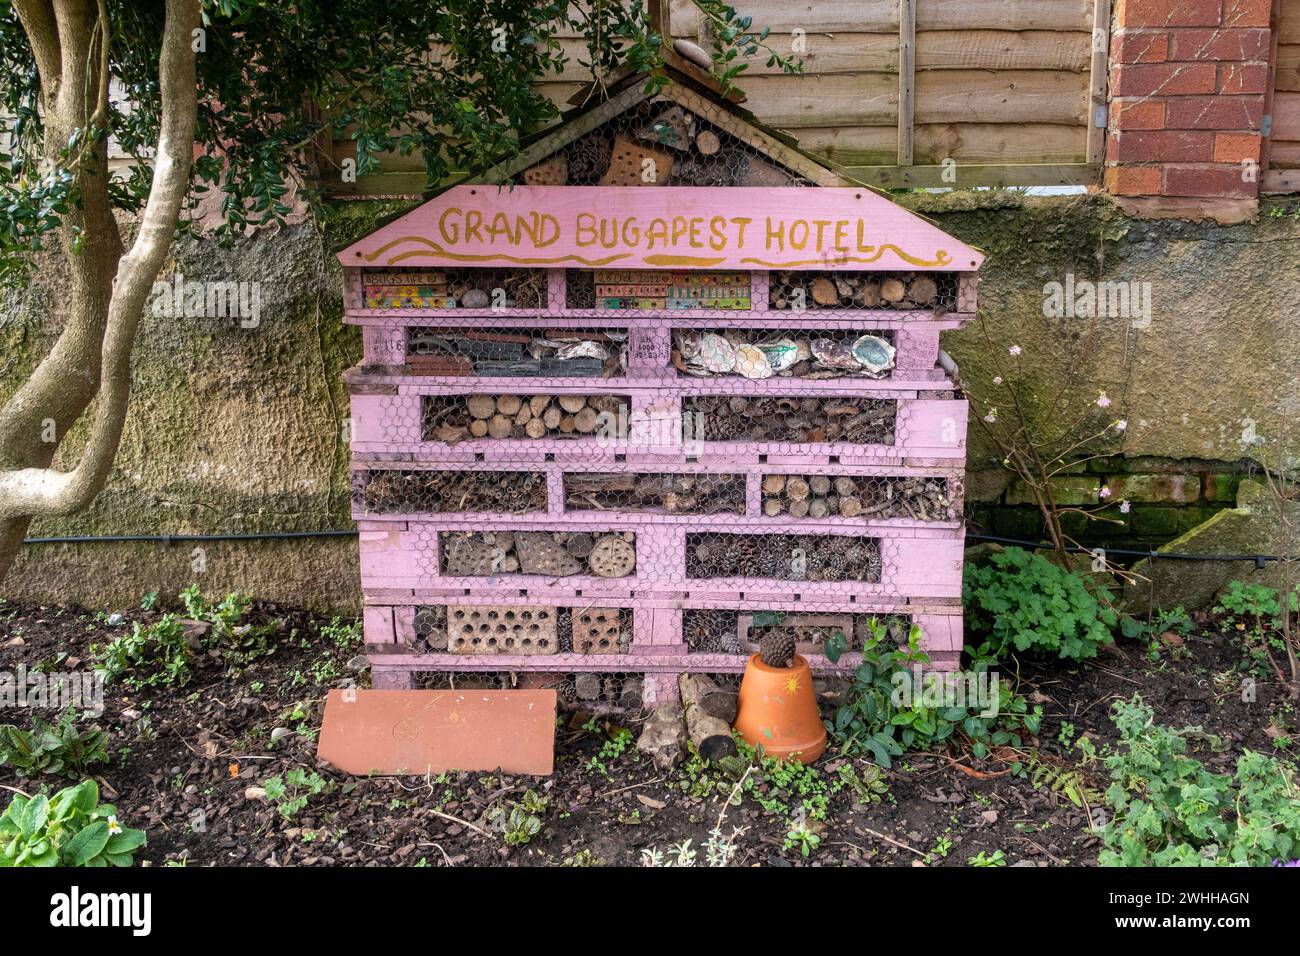 Großes Insektenhotel, Insektenschutzhaus, in Sidmouth, Devon. Das Grand Bugmost Hotel. Winterunterkunft für Insekten. Stockfoto